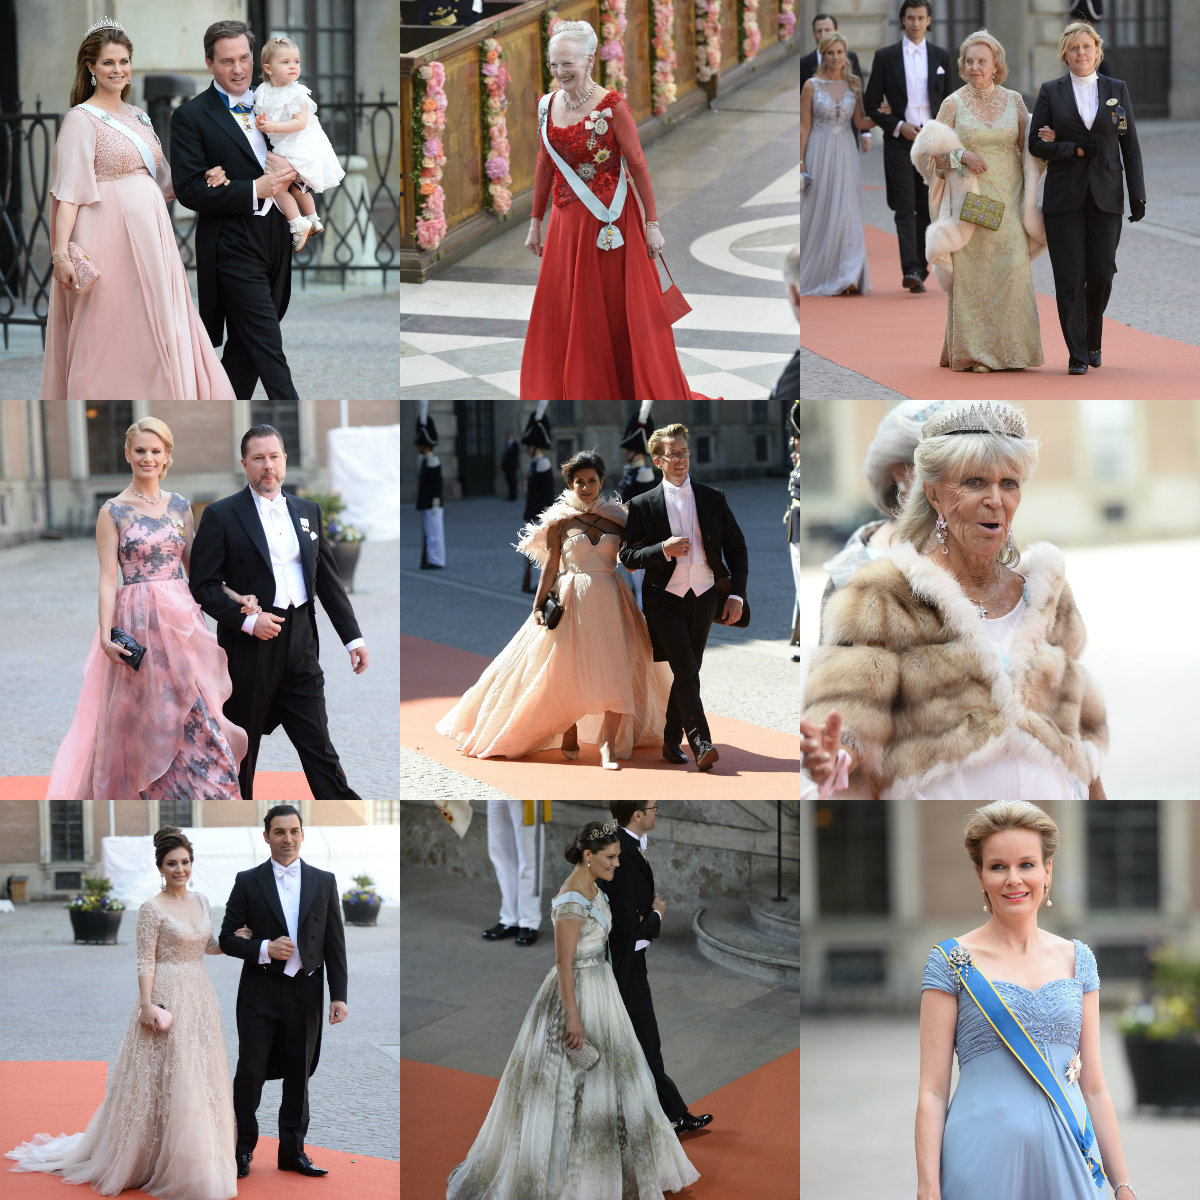 Prinsessan Sofia, Prins Carl Philip, Klänningar, Prinsbröllopet 2015, Kungliga bröllop